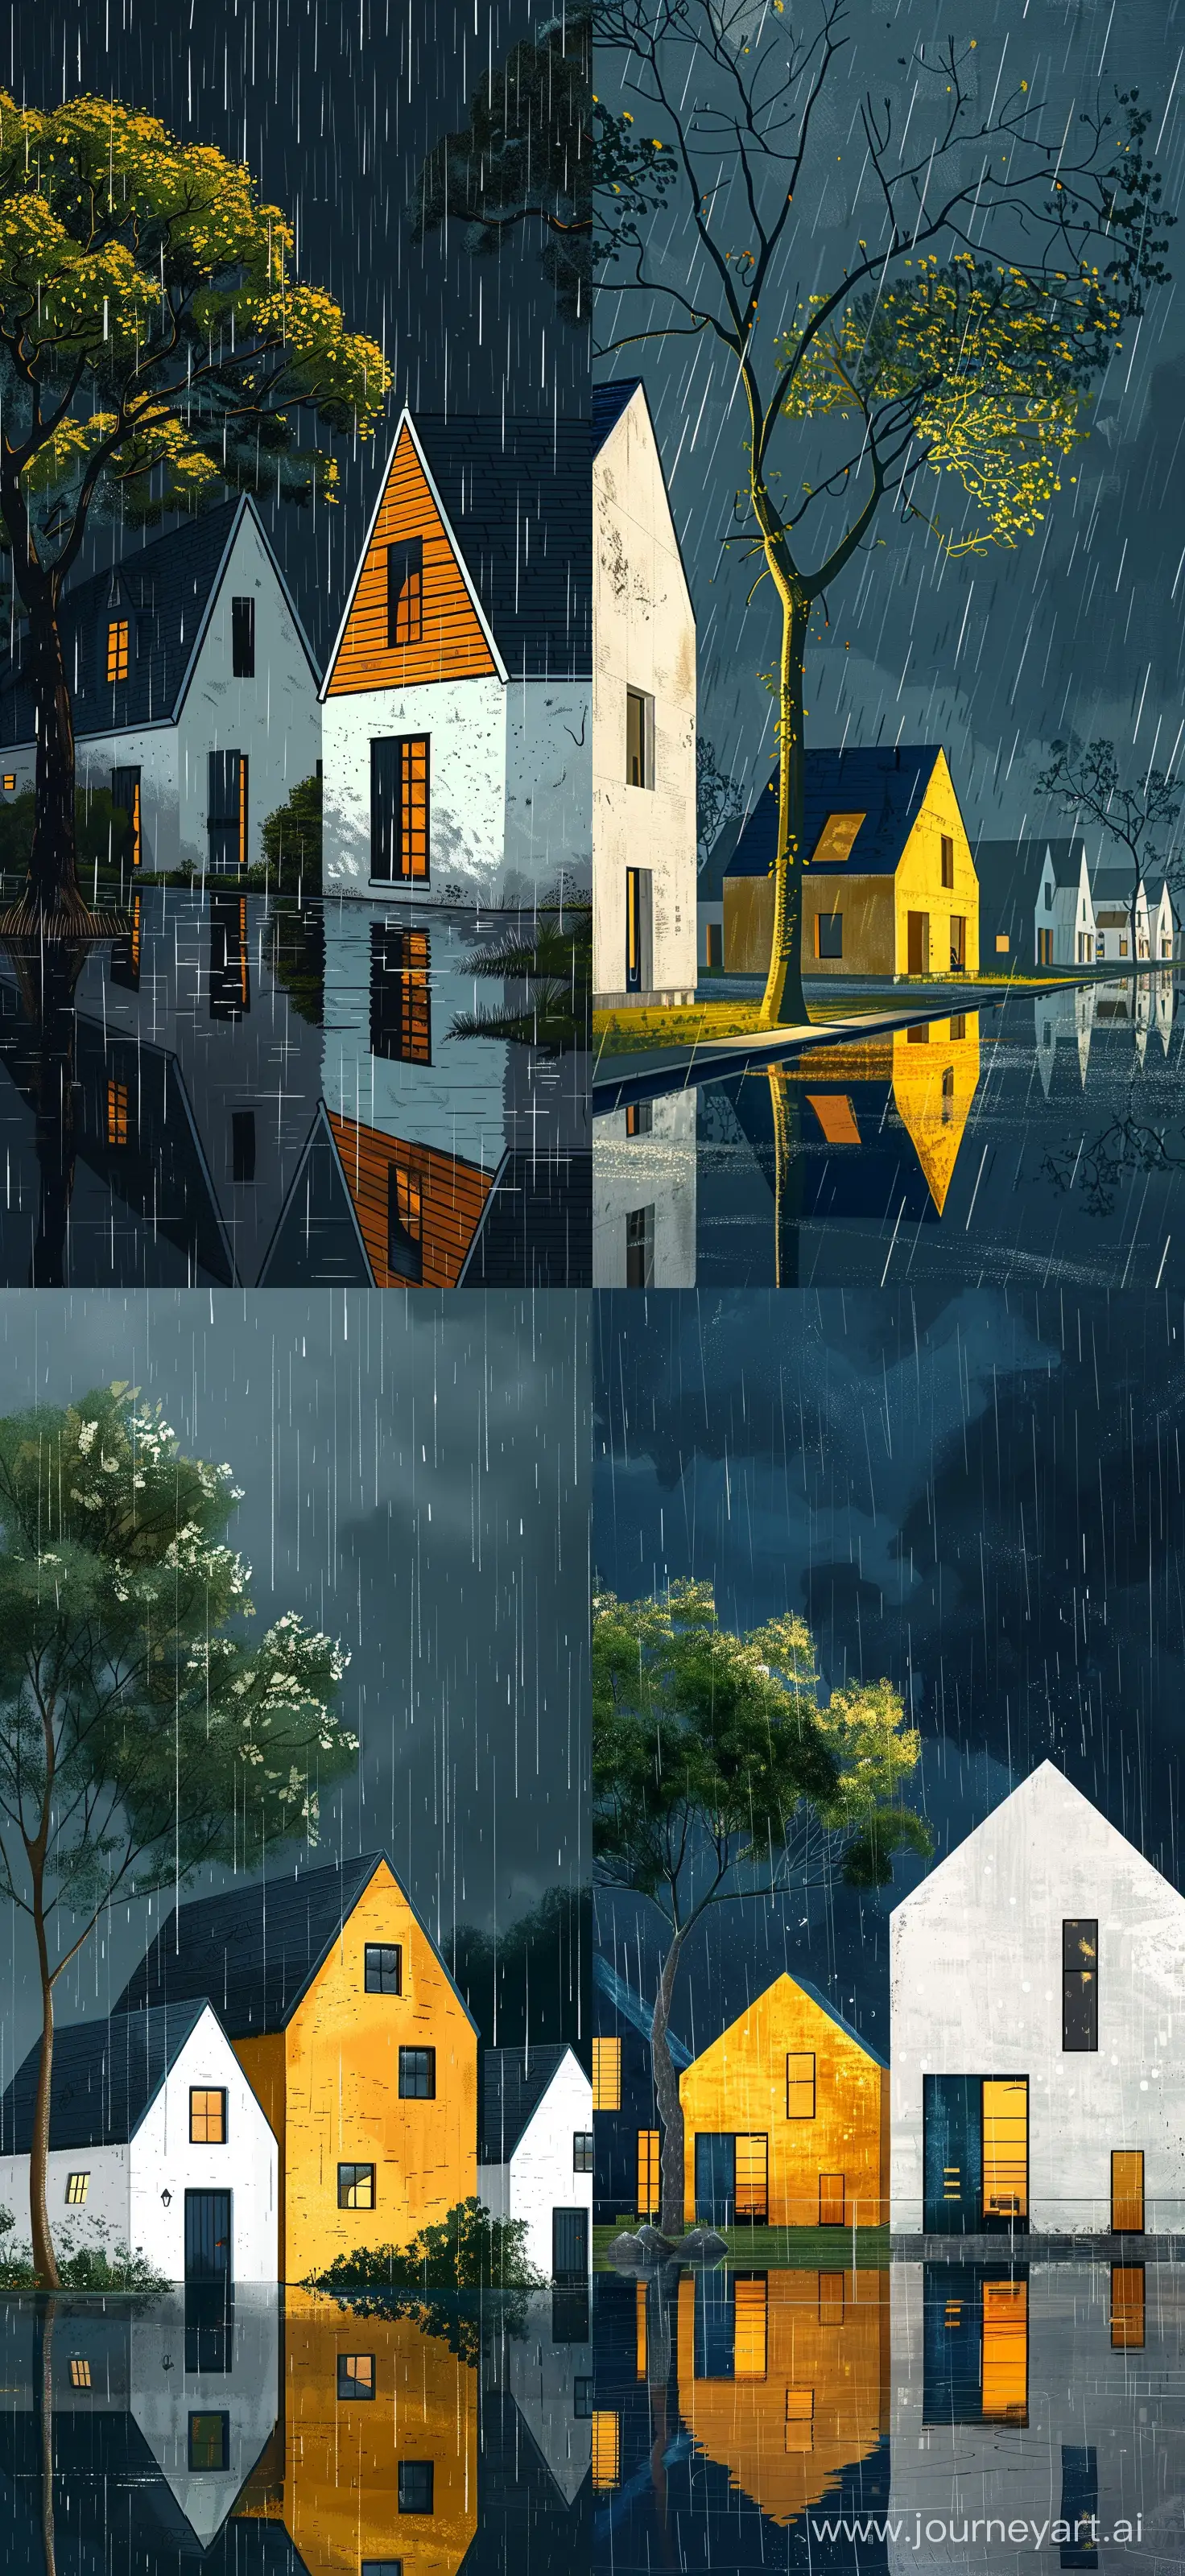 Modern-Gable-Houses-in-Rainy-Night-Illustration